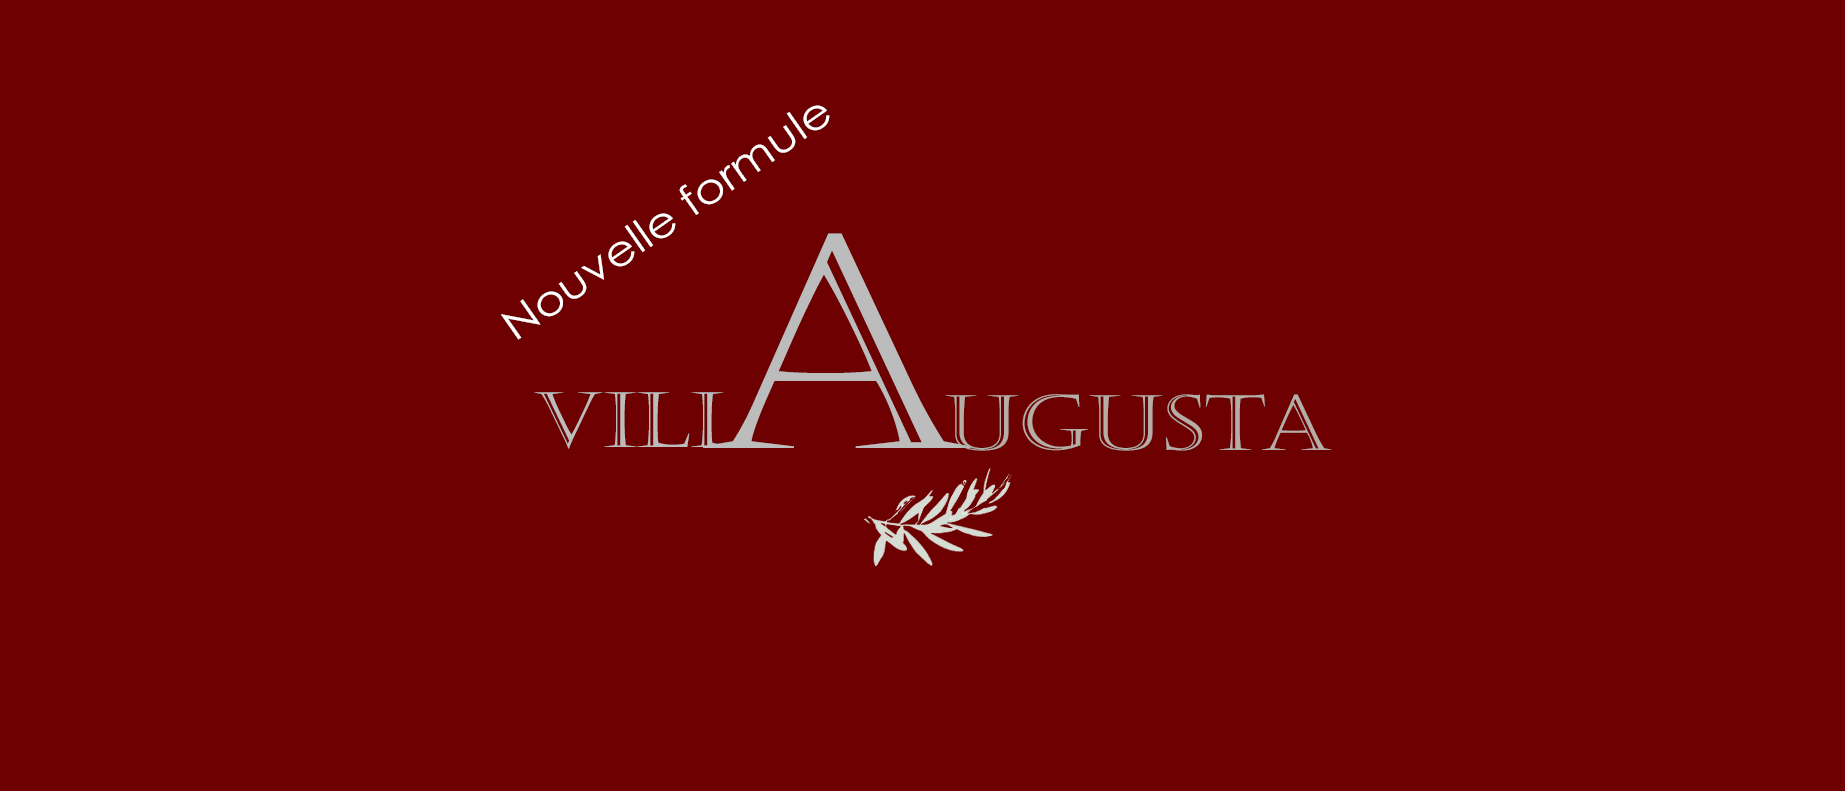 r1941_9_logo_villa_augusta_rouge_v6.jpg